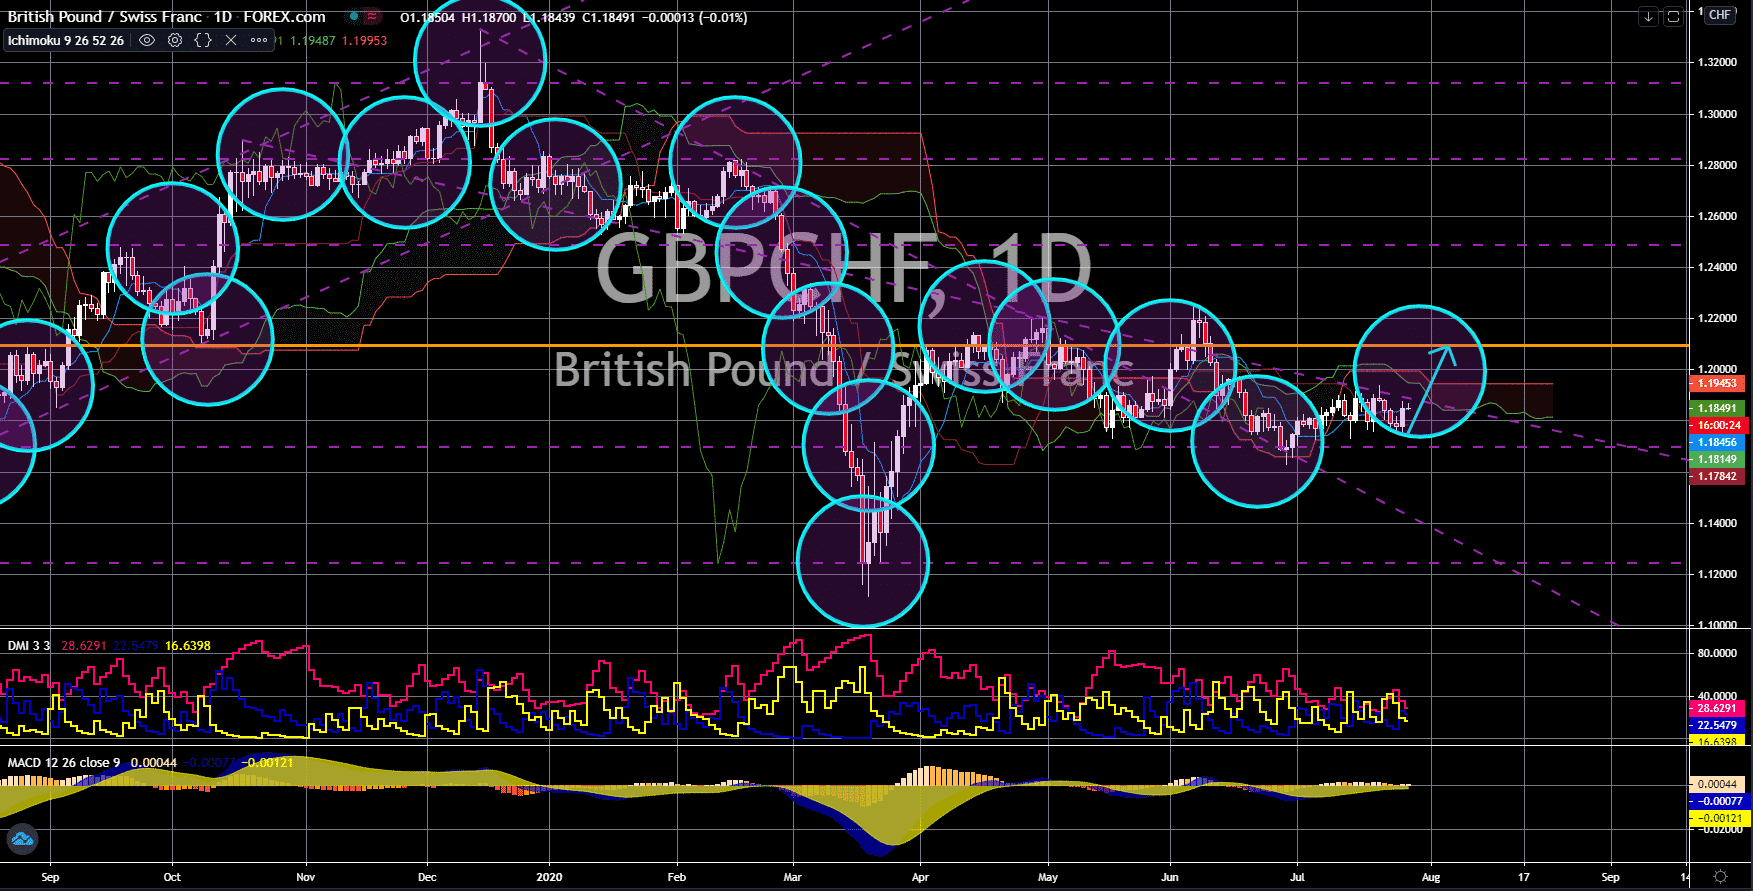 FinanceBrokerage - Notícias do mercado: GBP/CHF Gráfico